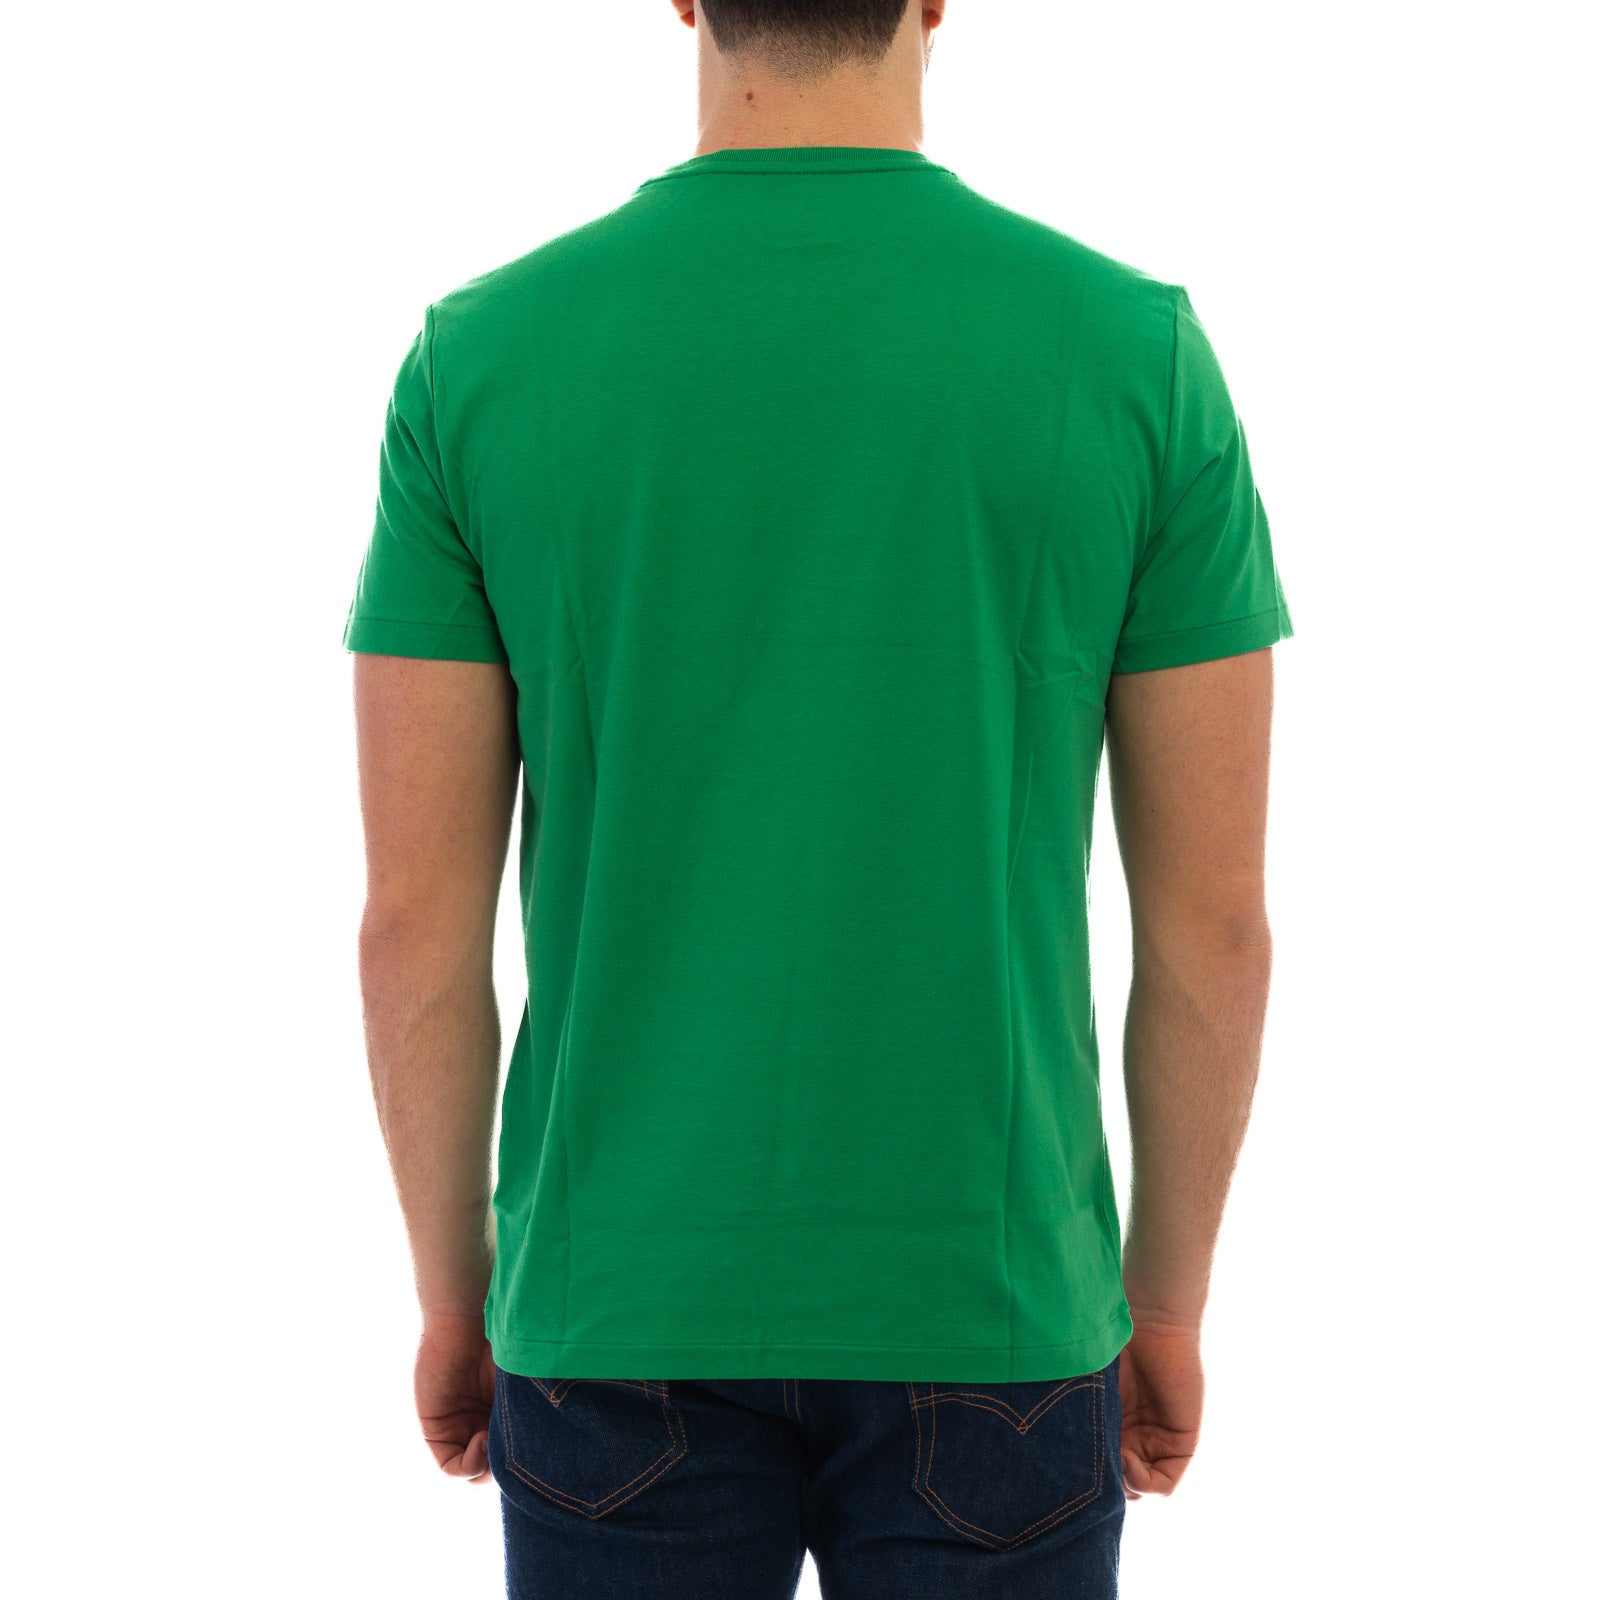 T-shirt POLO RALPH LAUREN
Lifeboat green